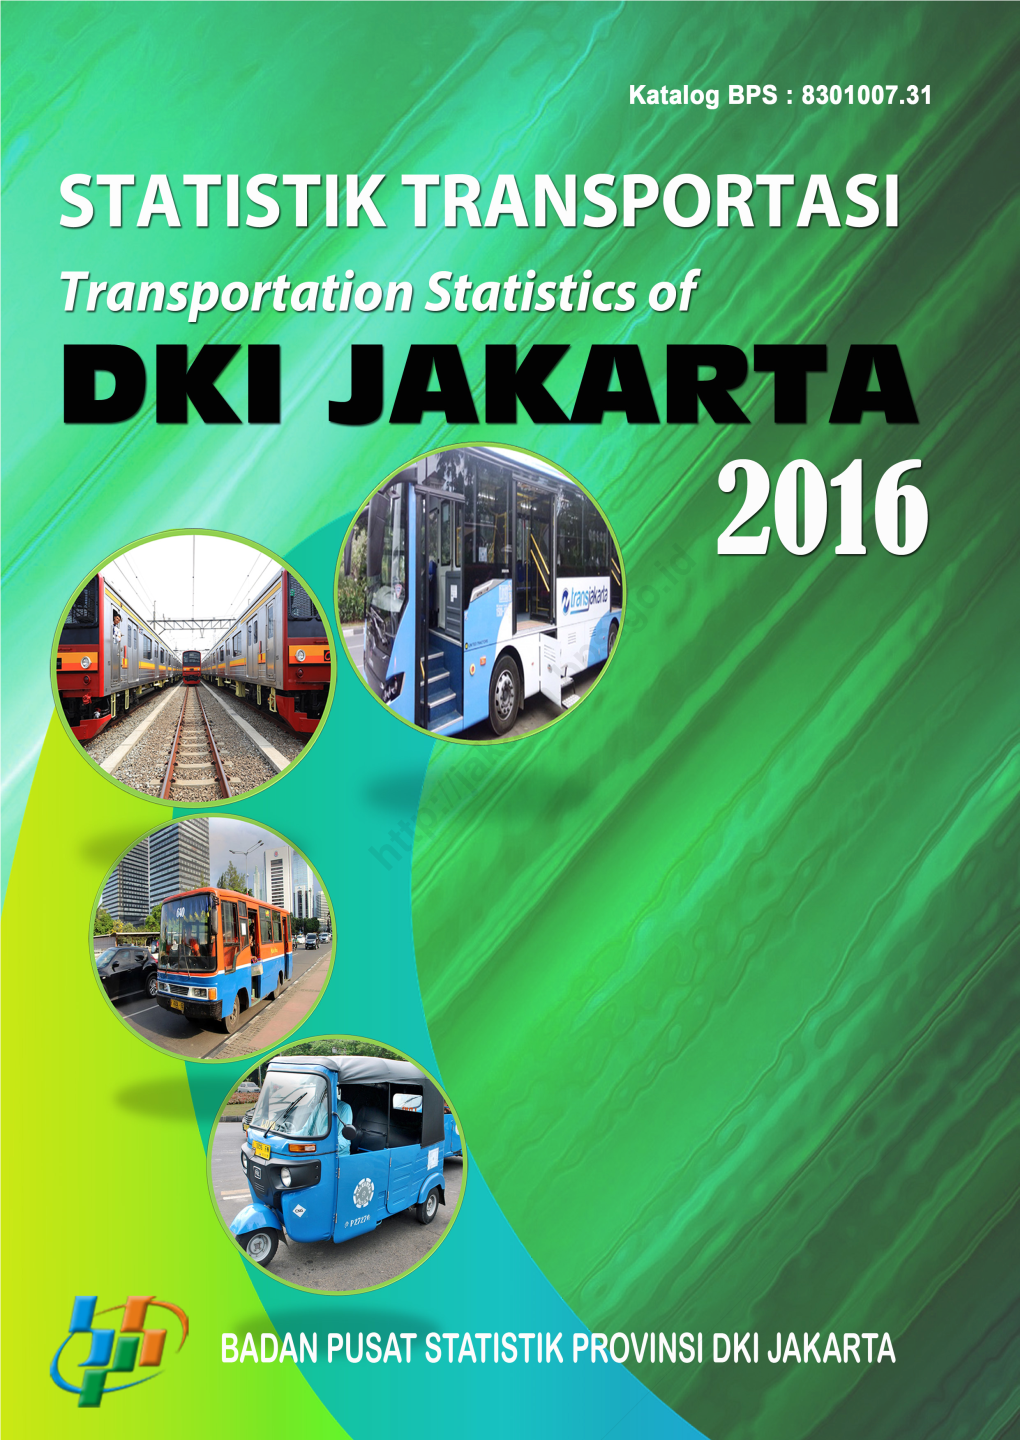 Statistik Transportasi Dki Jakarta 2016 Transportation Statistics of Dki Jakarta 2016